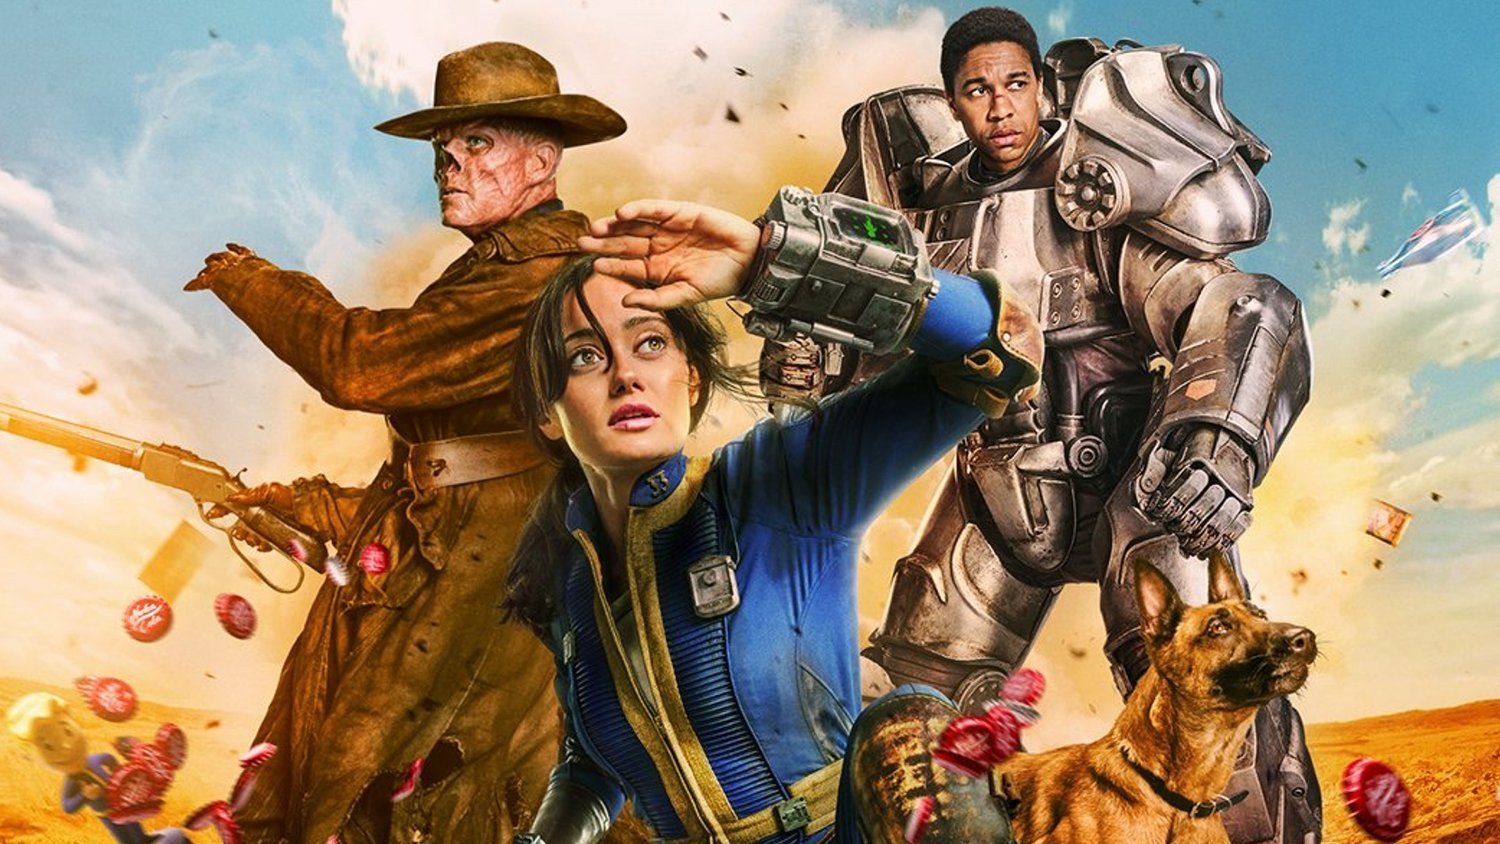 Bethesda svela le statistiche ufficiali dei protagonisti della serie TV di Fallout